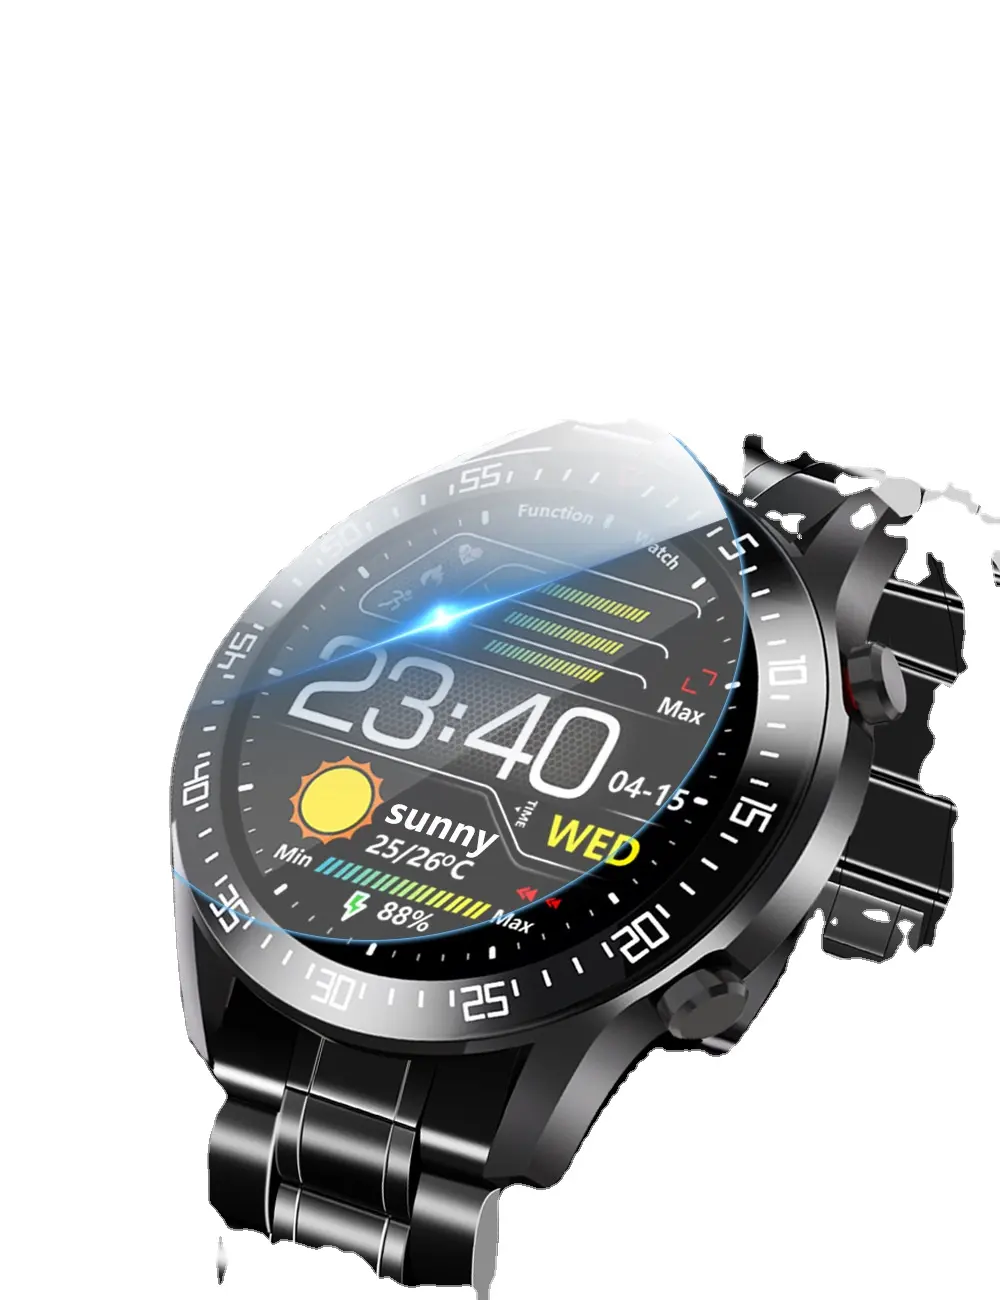 الأكثر مبيعًا شعار مخصص للرجال والنساء ساعة ذكية رياضية أندرويد Ios ساعة ذكية شاشة دائرية لهاتف أيفون وسامسونج المحمول